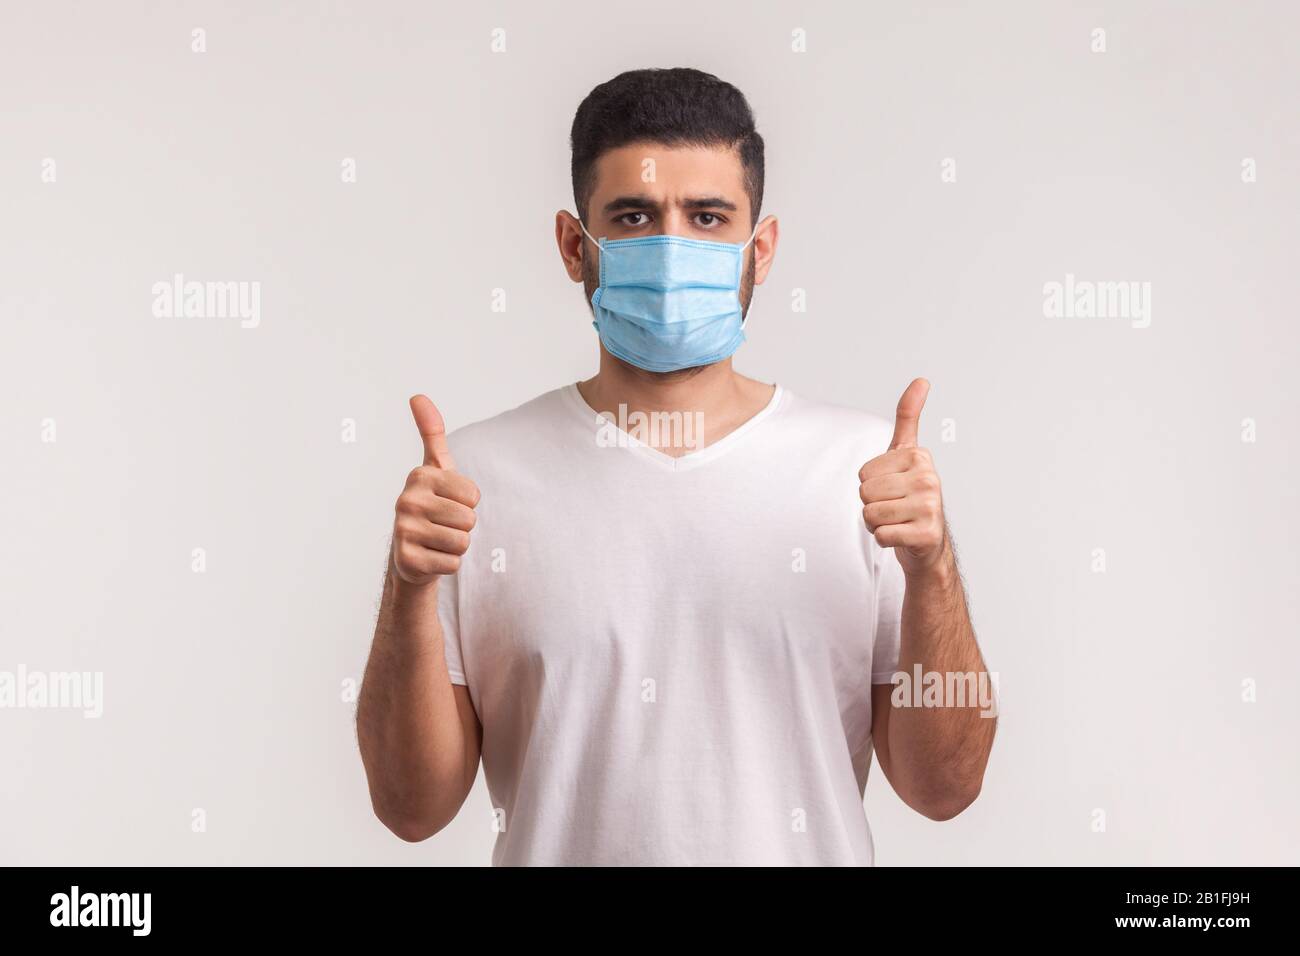 Protezione efficace contro le malattie contagiose. L'uomo che mostra i pollici e indossa una maschera igienica per prevenire infezioni, malattie respiratorie come l'influenza Foto Stock